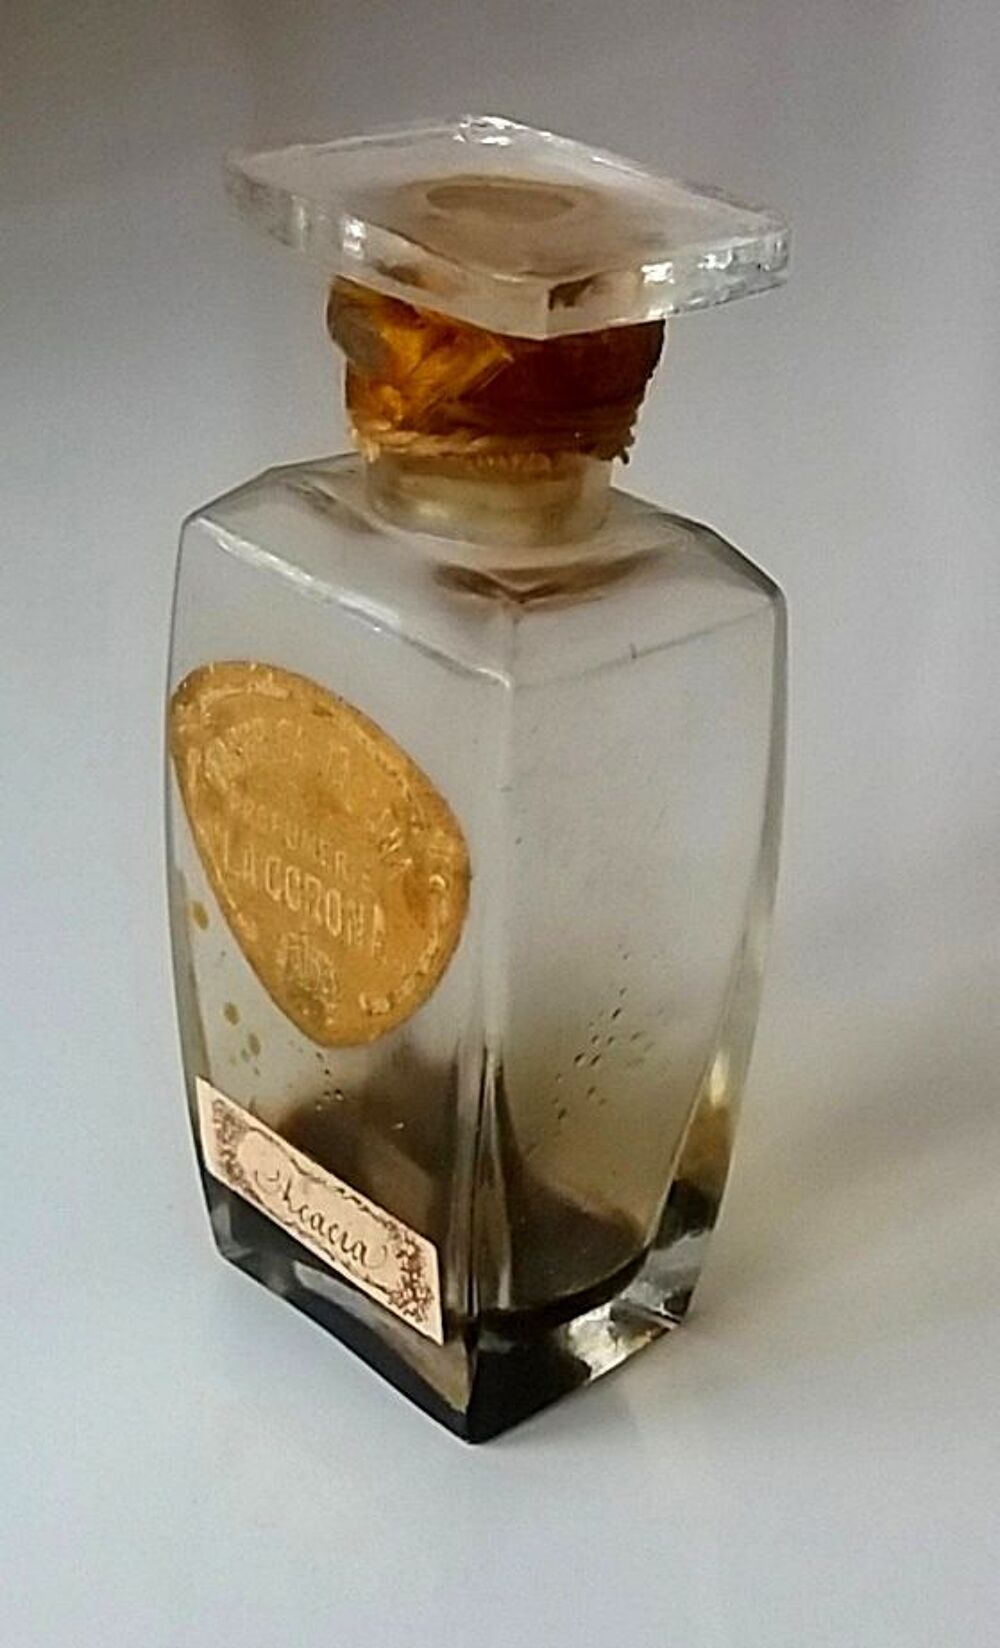 Flacon de parfum La Corona : Acacia 